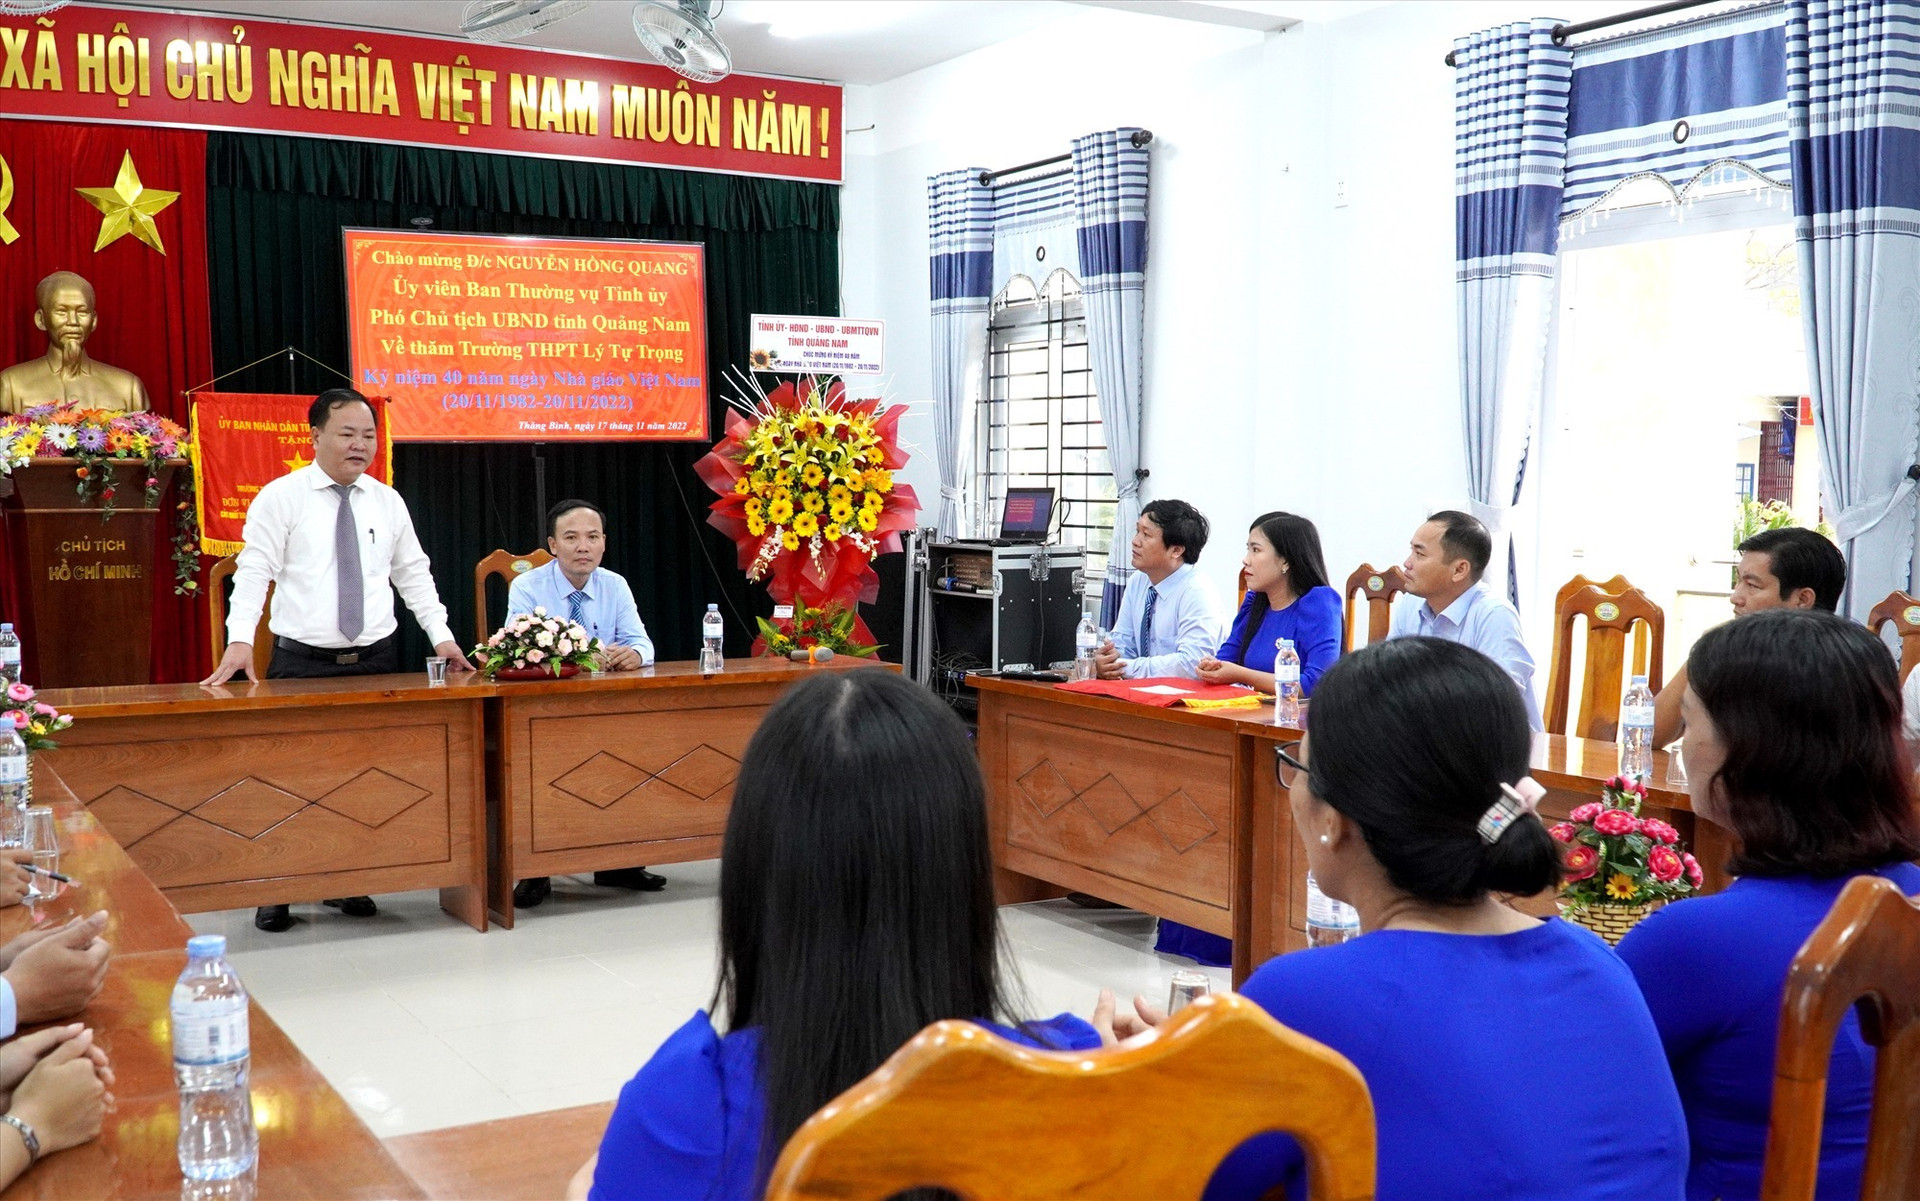 Phó Chủ tịch UBND tỉnh Nguyễn Hồng Quang trò chuyện, thăm hỏi tập thể cán bộ, giáo viên Trường THPT Lý Tự Trọng (Thăng Bình). Ảnh: H.Q